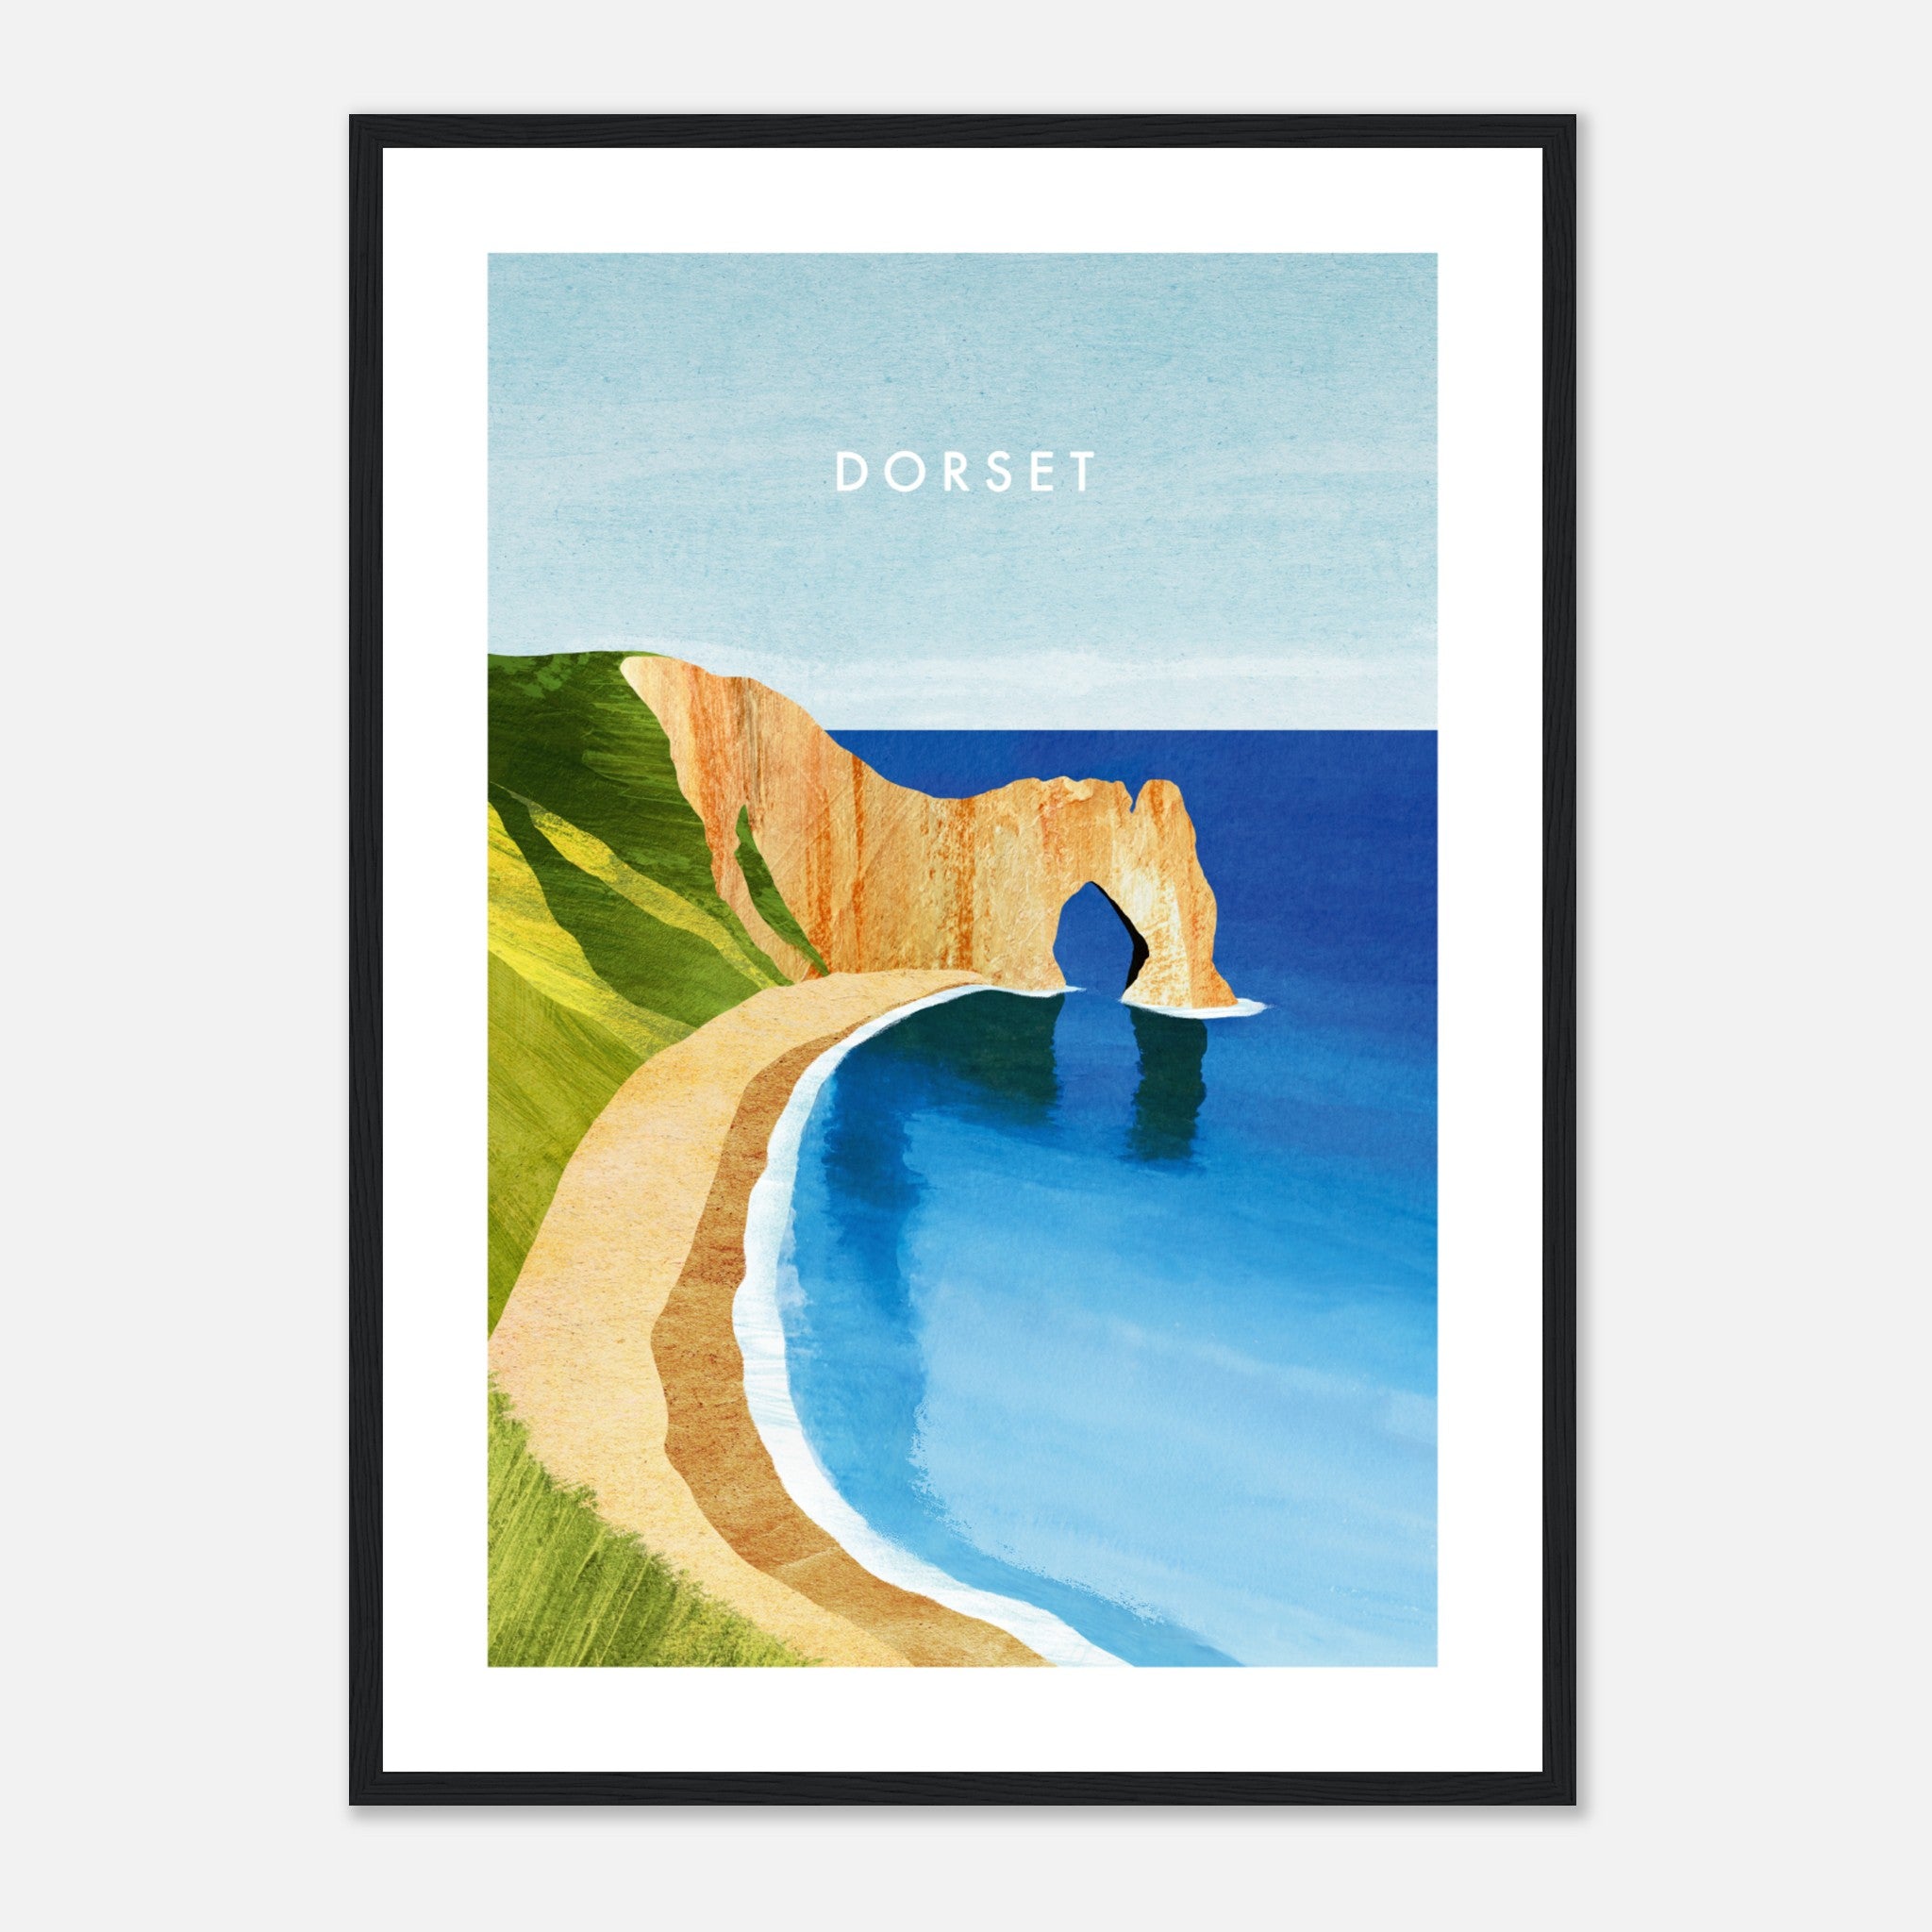 Dorset, Durdle Door Poster